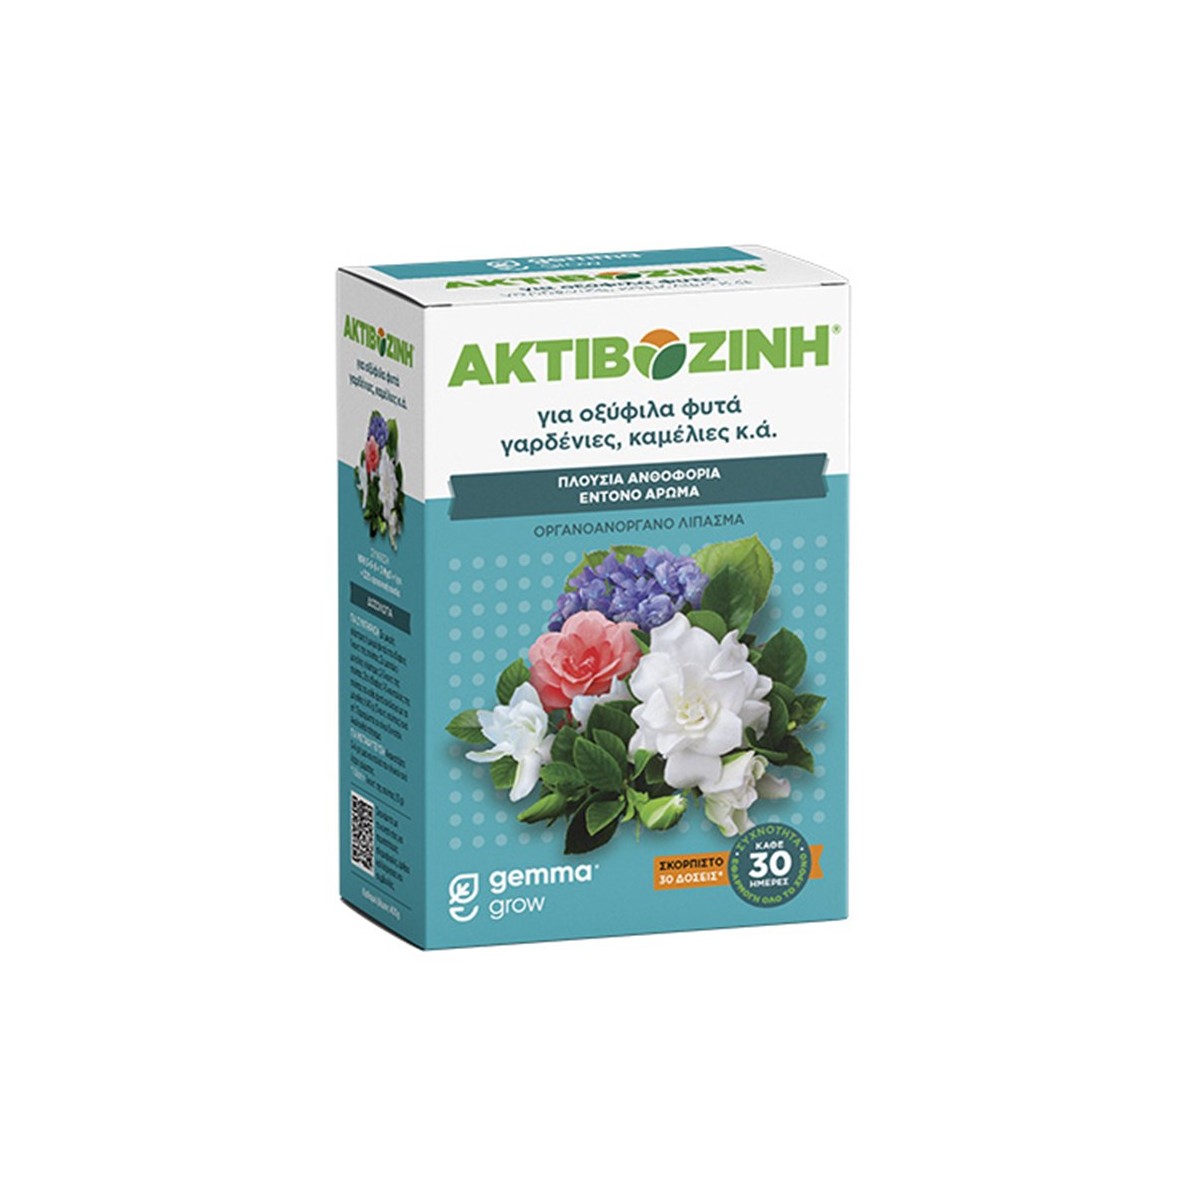 Ακτιβοζίνη για Οξύφιλα φυτά  400 g-MaShop.gr